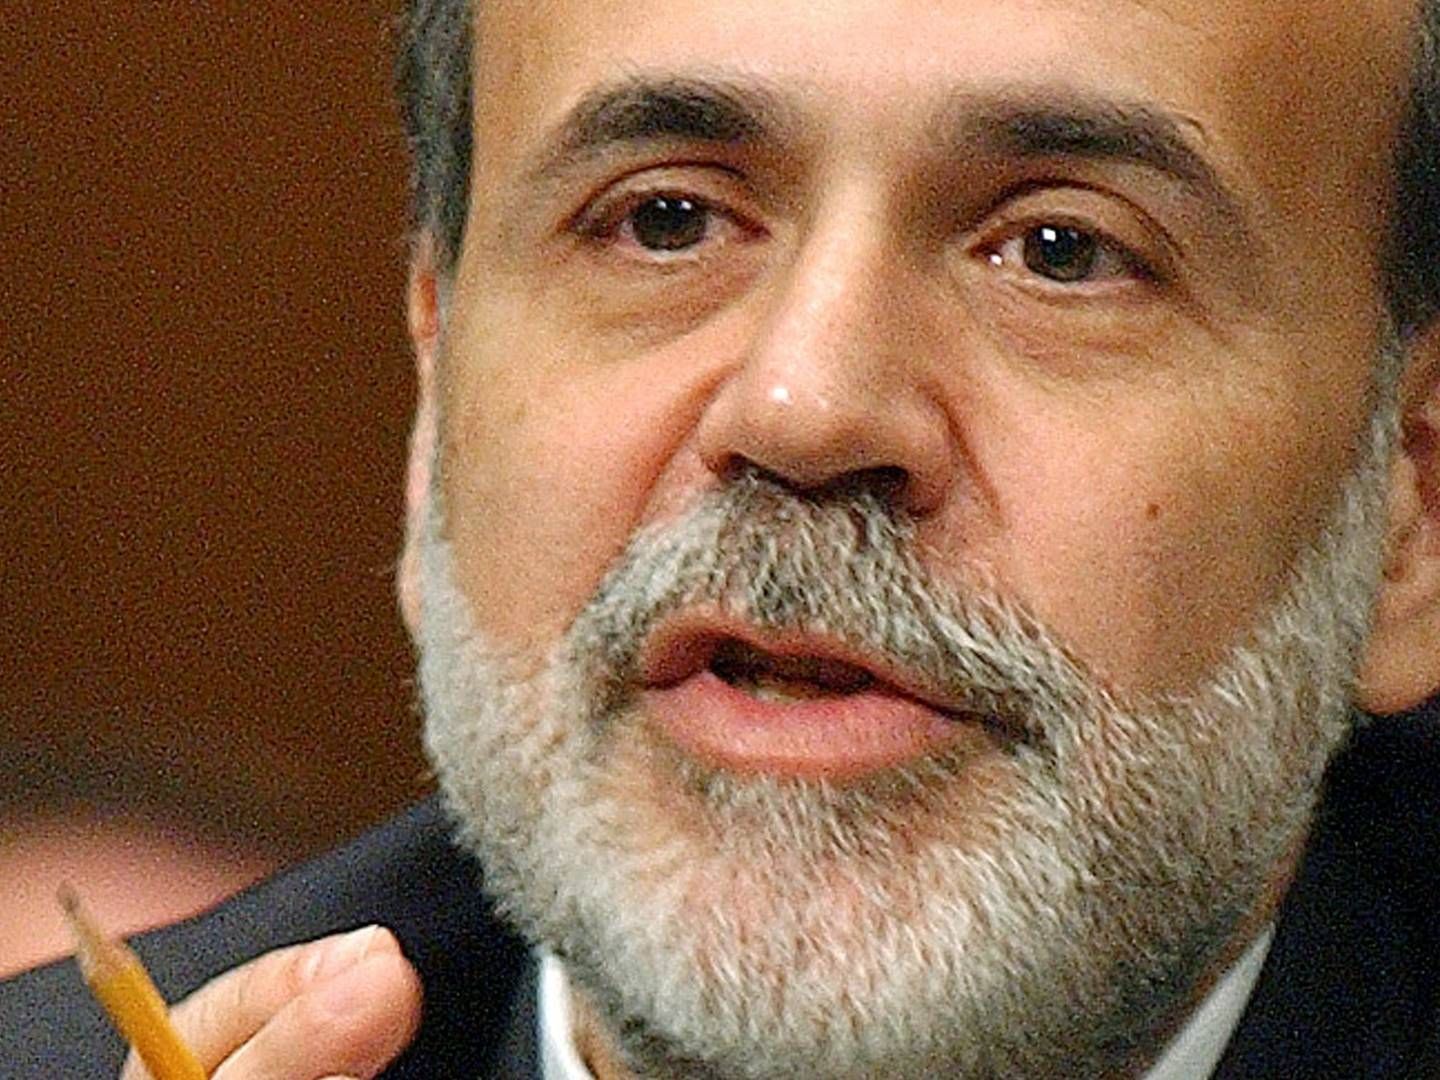 Den tidligere amerikanske centralbankchef Ben Bernanke er blevet belønnet med en Nobelpris. | Foto: DENNIS COOK/AP